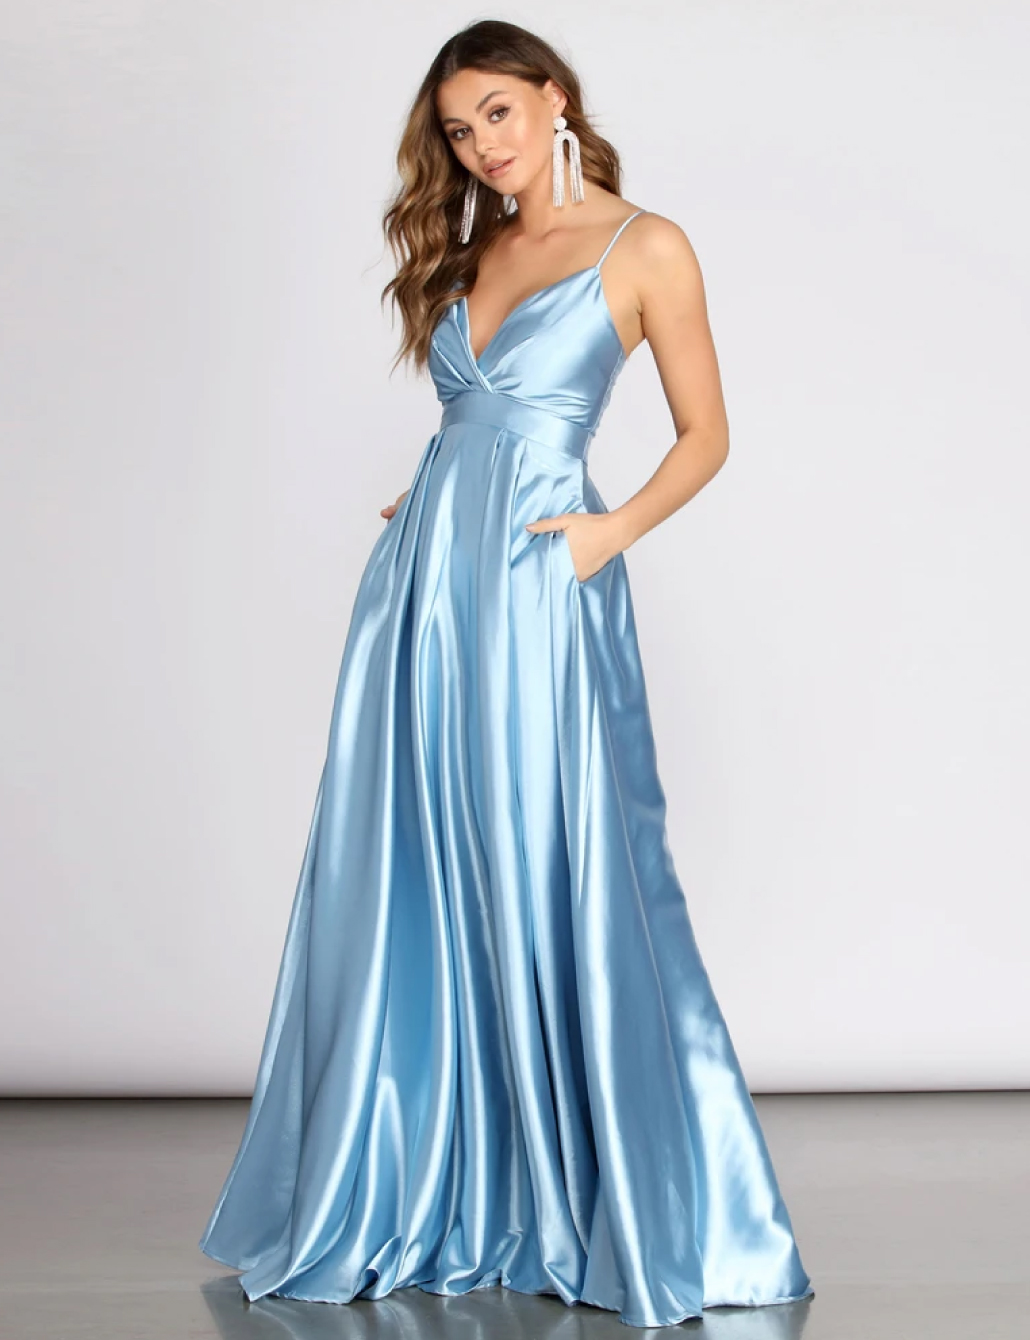 Sapphire Blue Evening Gown, Blue Winter Formal Dress, Wedding